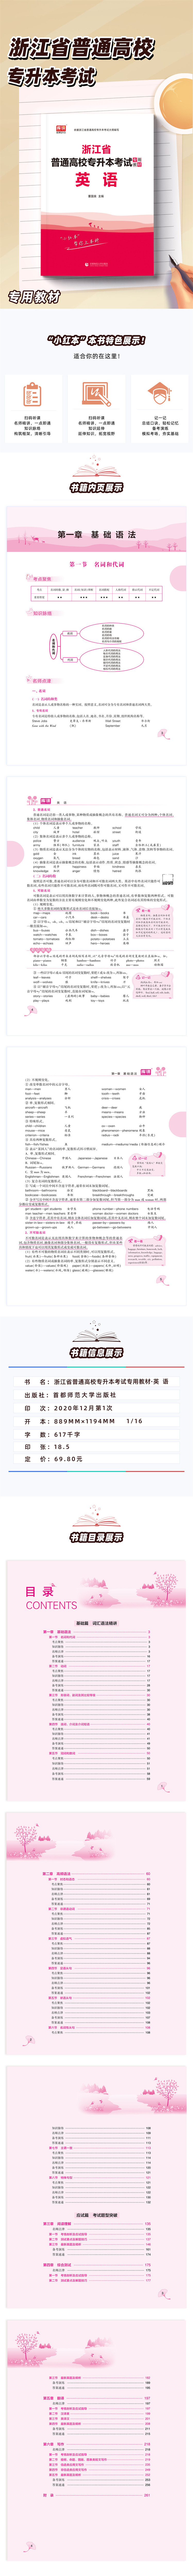 2022浙江省普通高校专升本考试专用教材-英语详情.jpg